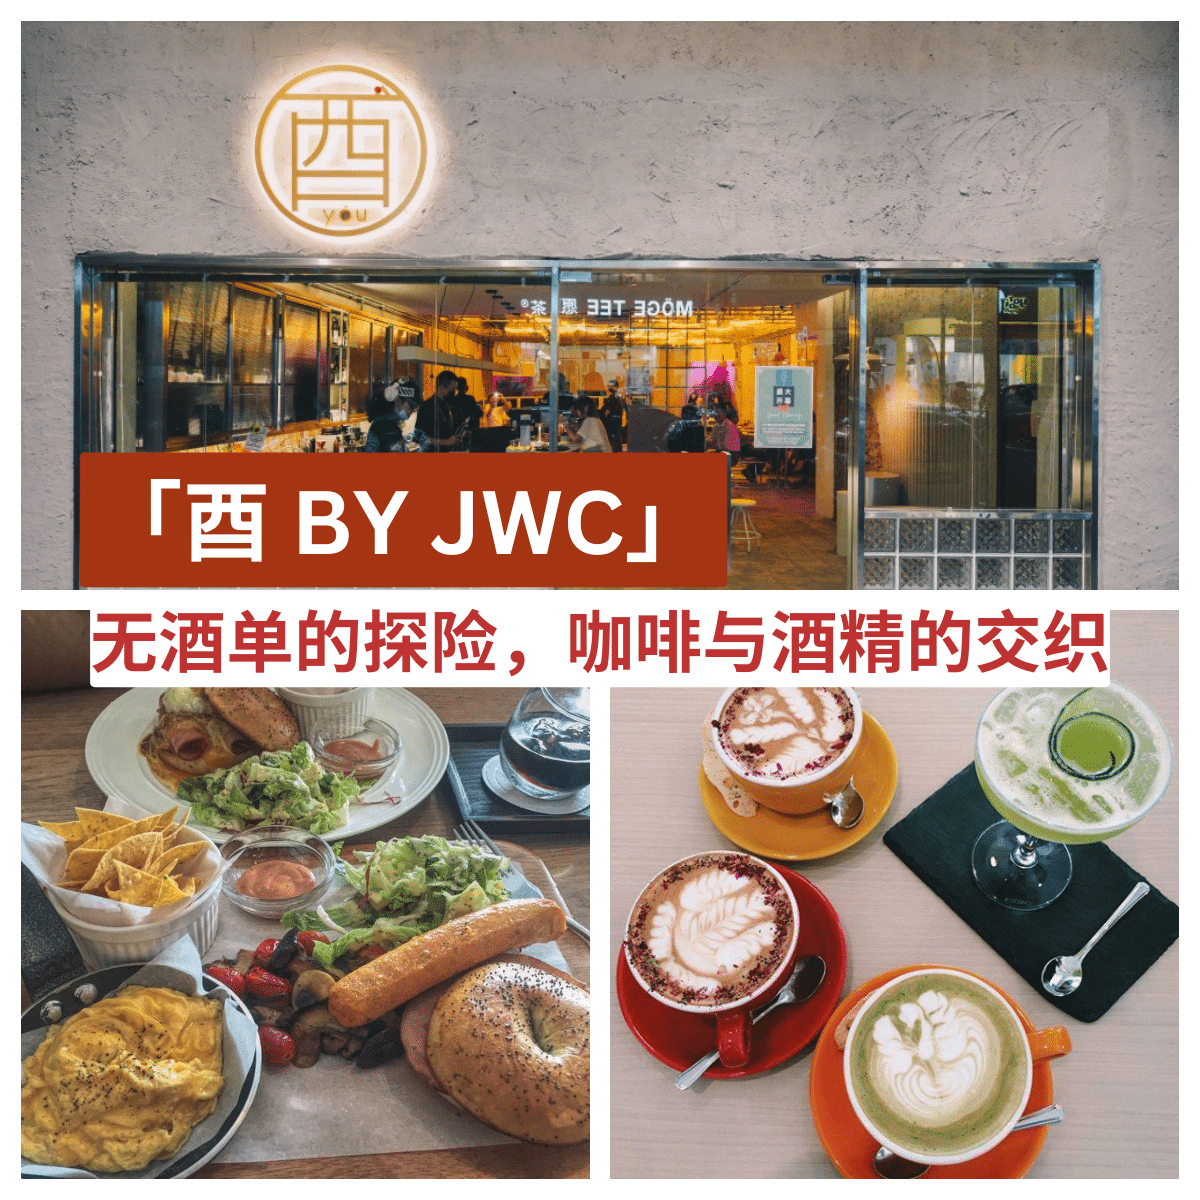 “探索五福城最独特的咖啡馆酒吧 —  酉 BY JWC 的季节性咖啡与创新美食。”